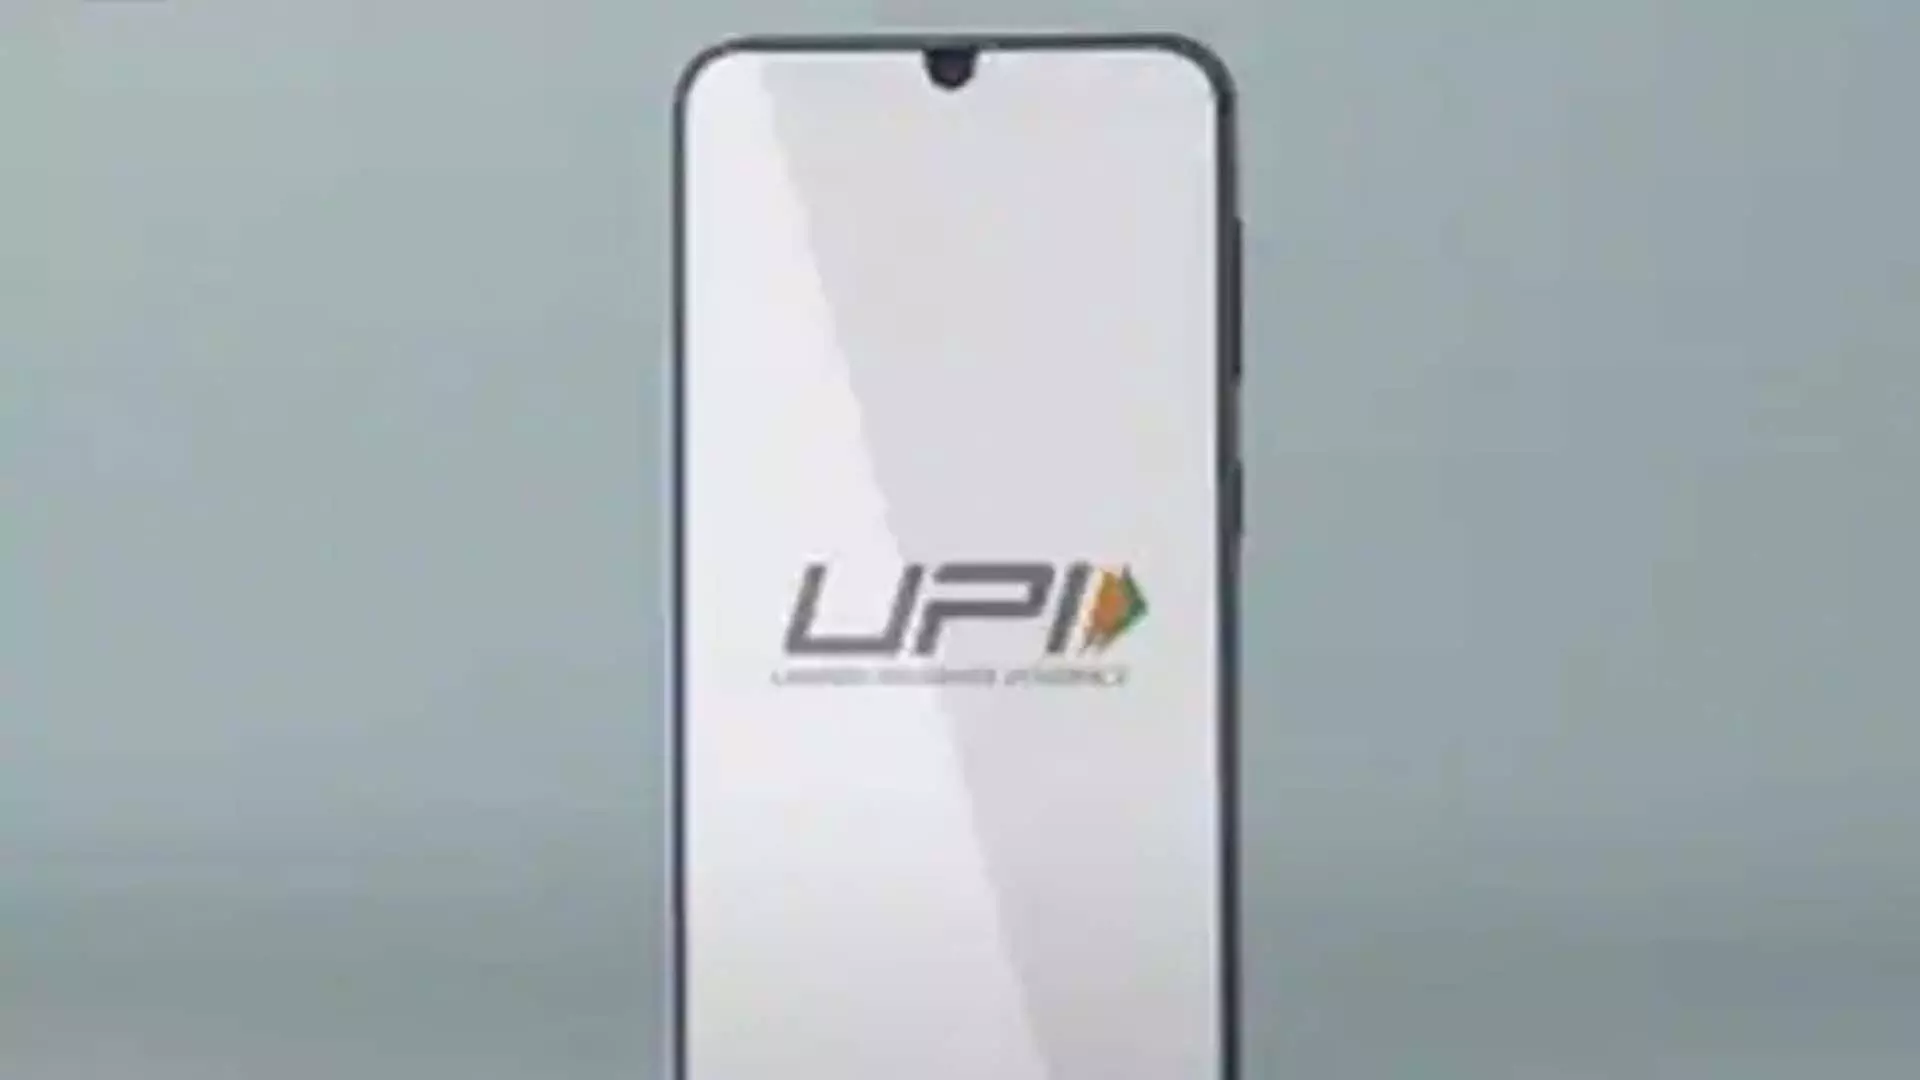 PhonePe ने लंकापे के साथ साझेदारी की, श्रीलंका में UPI लॉन्च किया